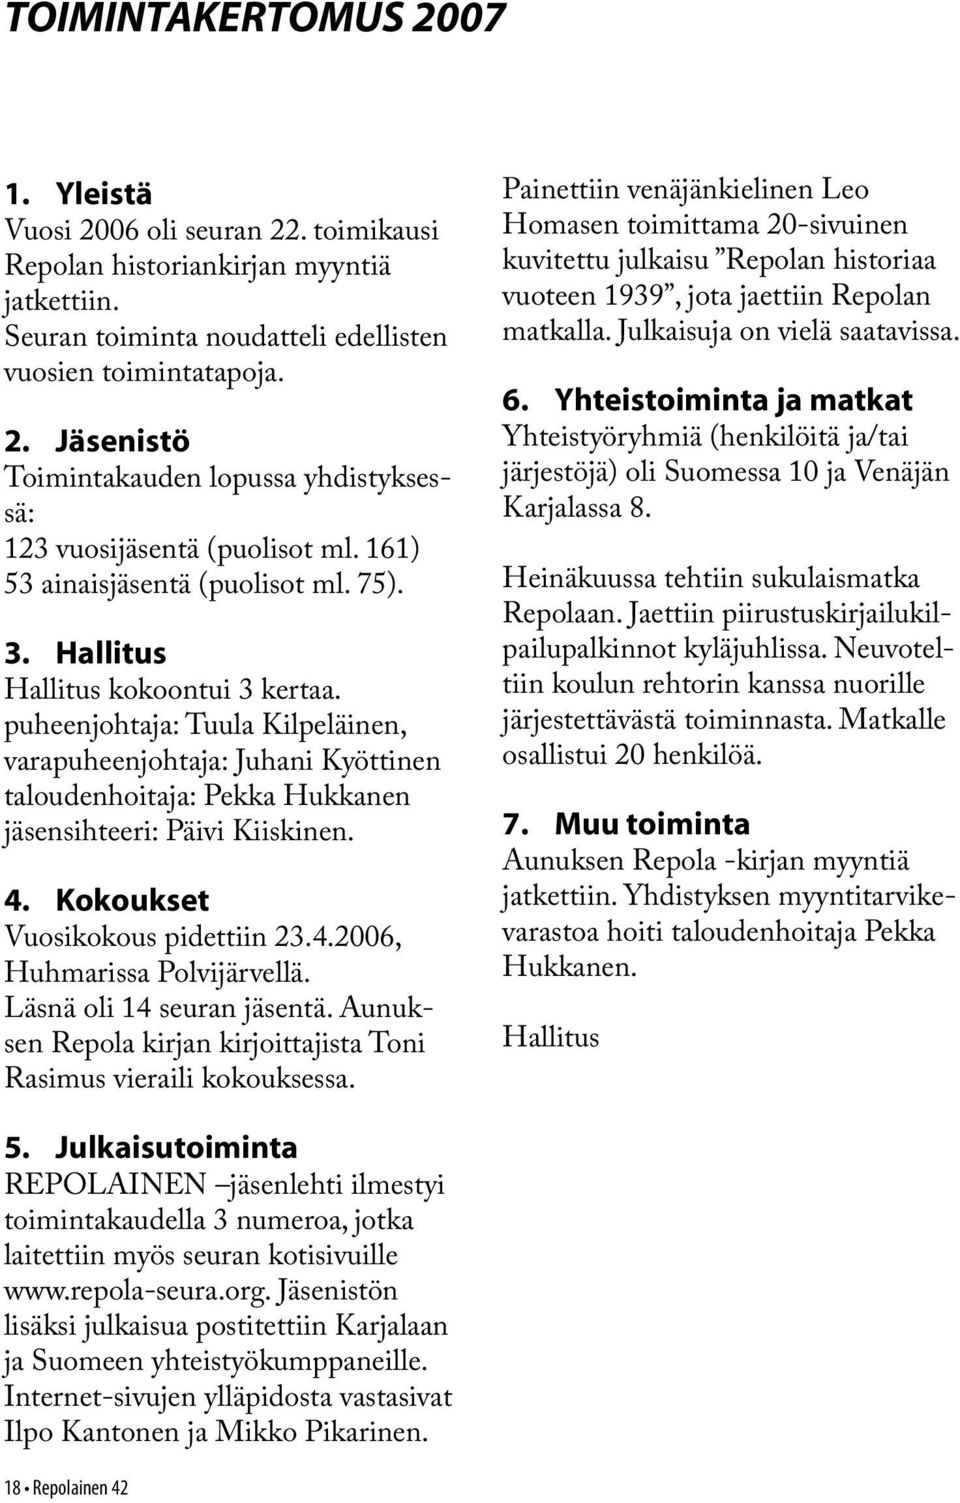 puheenjohtaja: Tuula Kilpeläinen, varapuheenjohtaja: Juhani Kyöttinen taloudenhoitaja: Pekka Hukkanen jäsensihteeri: Päivi Kiiskinen. 4. Kokoukset Vuosikokous pidettiin 23.4.2006, Huhmarissa Polvijärvellä.